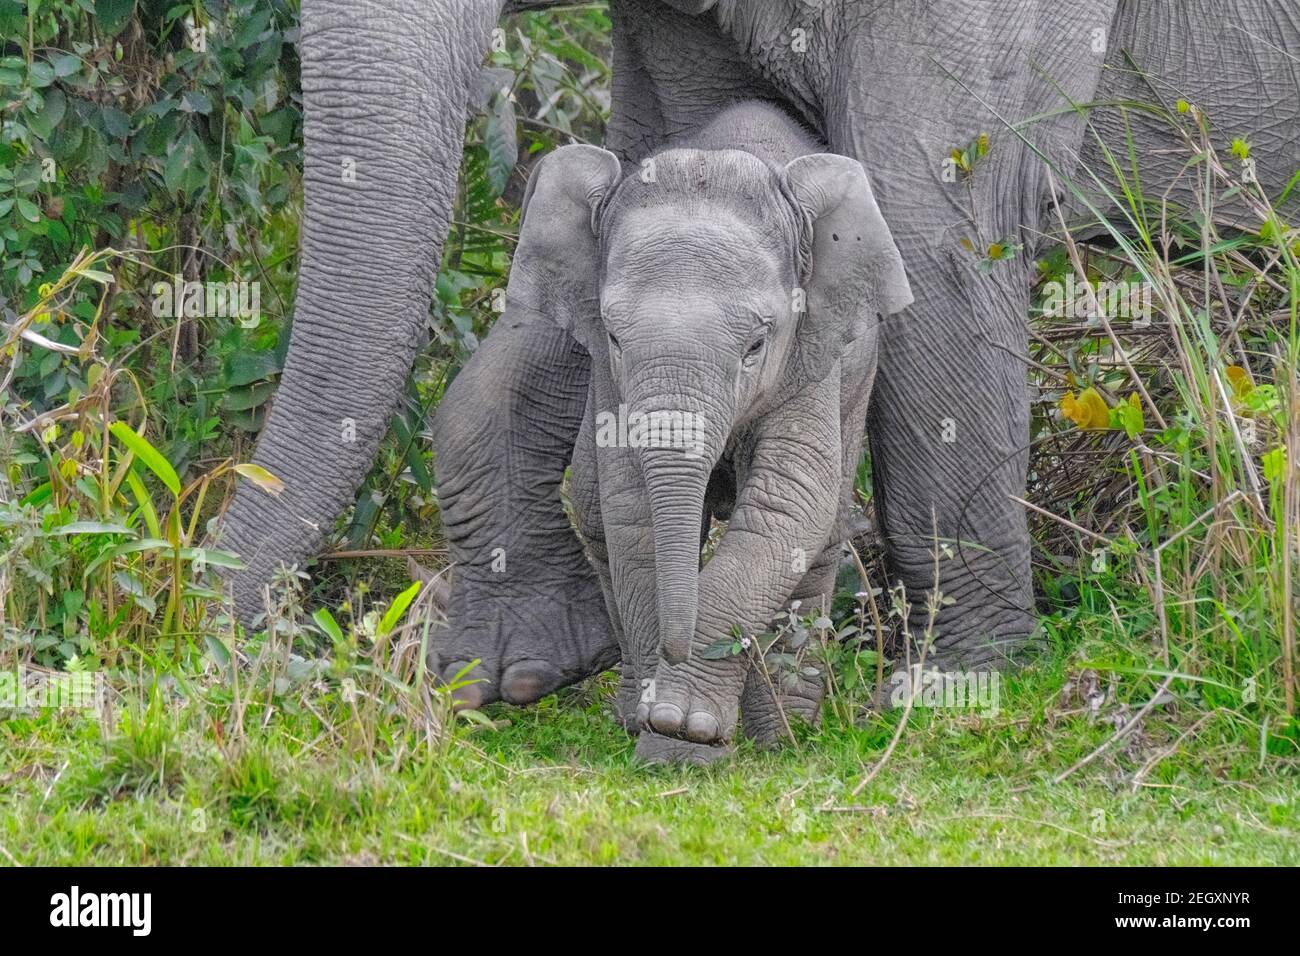 Asian elephant baby (Elephas maximus) face. Kaziranga National Park, Assam, India Stock Photo